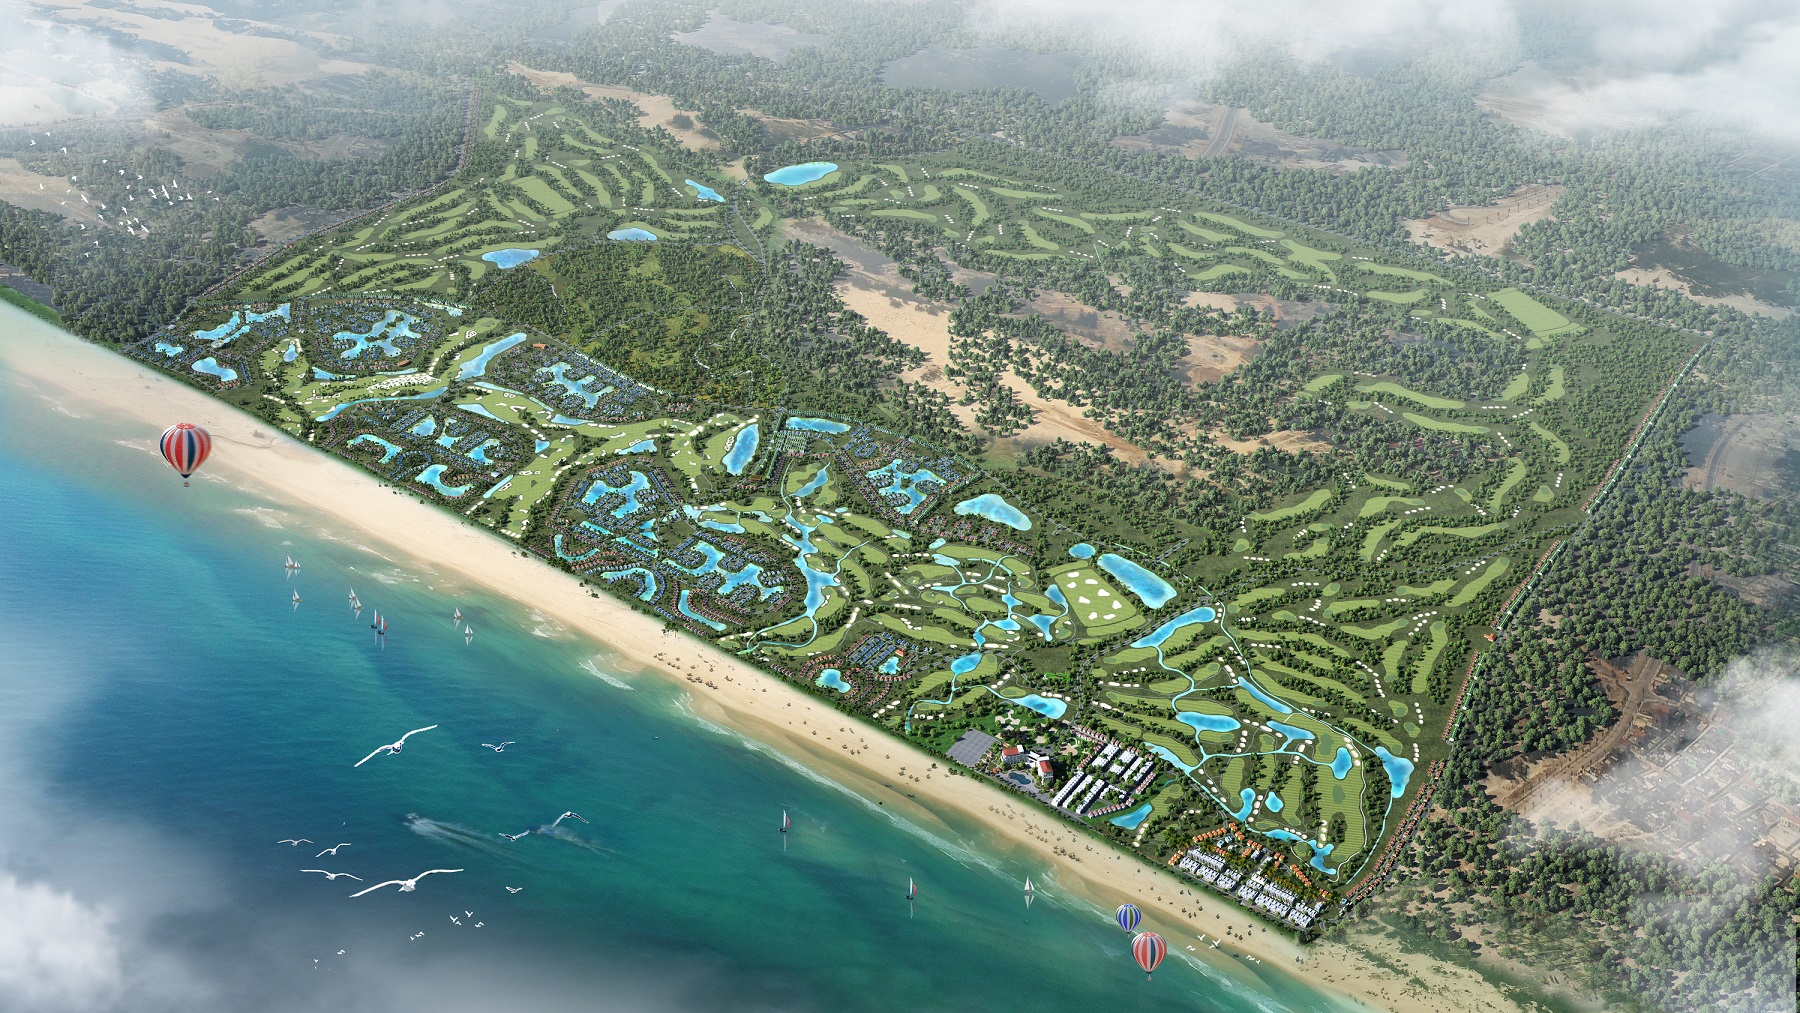 FLC Quảng Bình Beach & Golf Resort